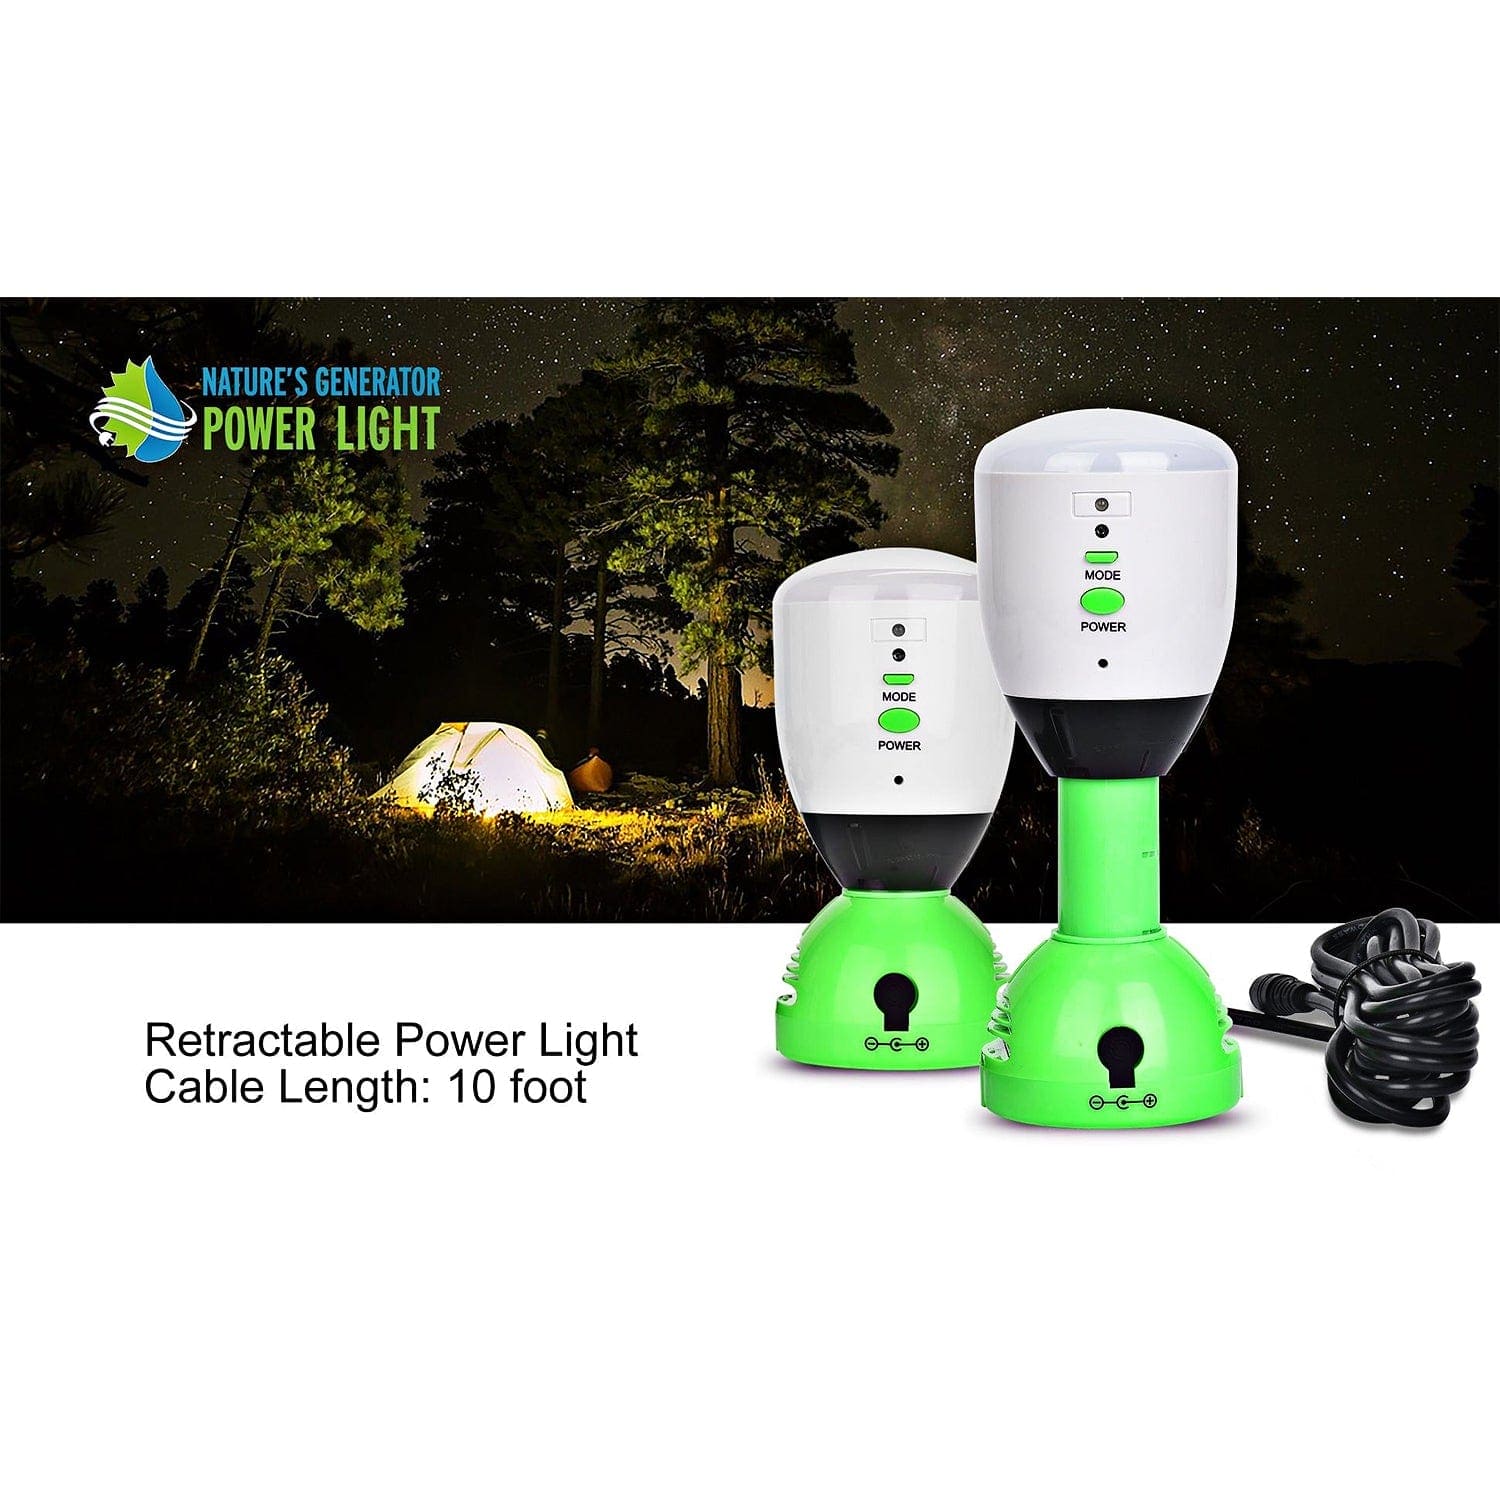 Nature's Generator Power Light - 4 Pack - Nature's Generator